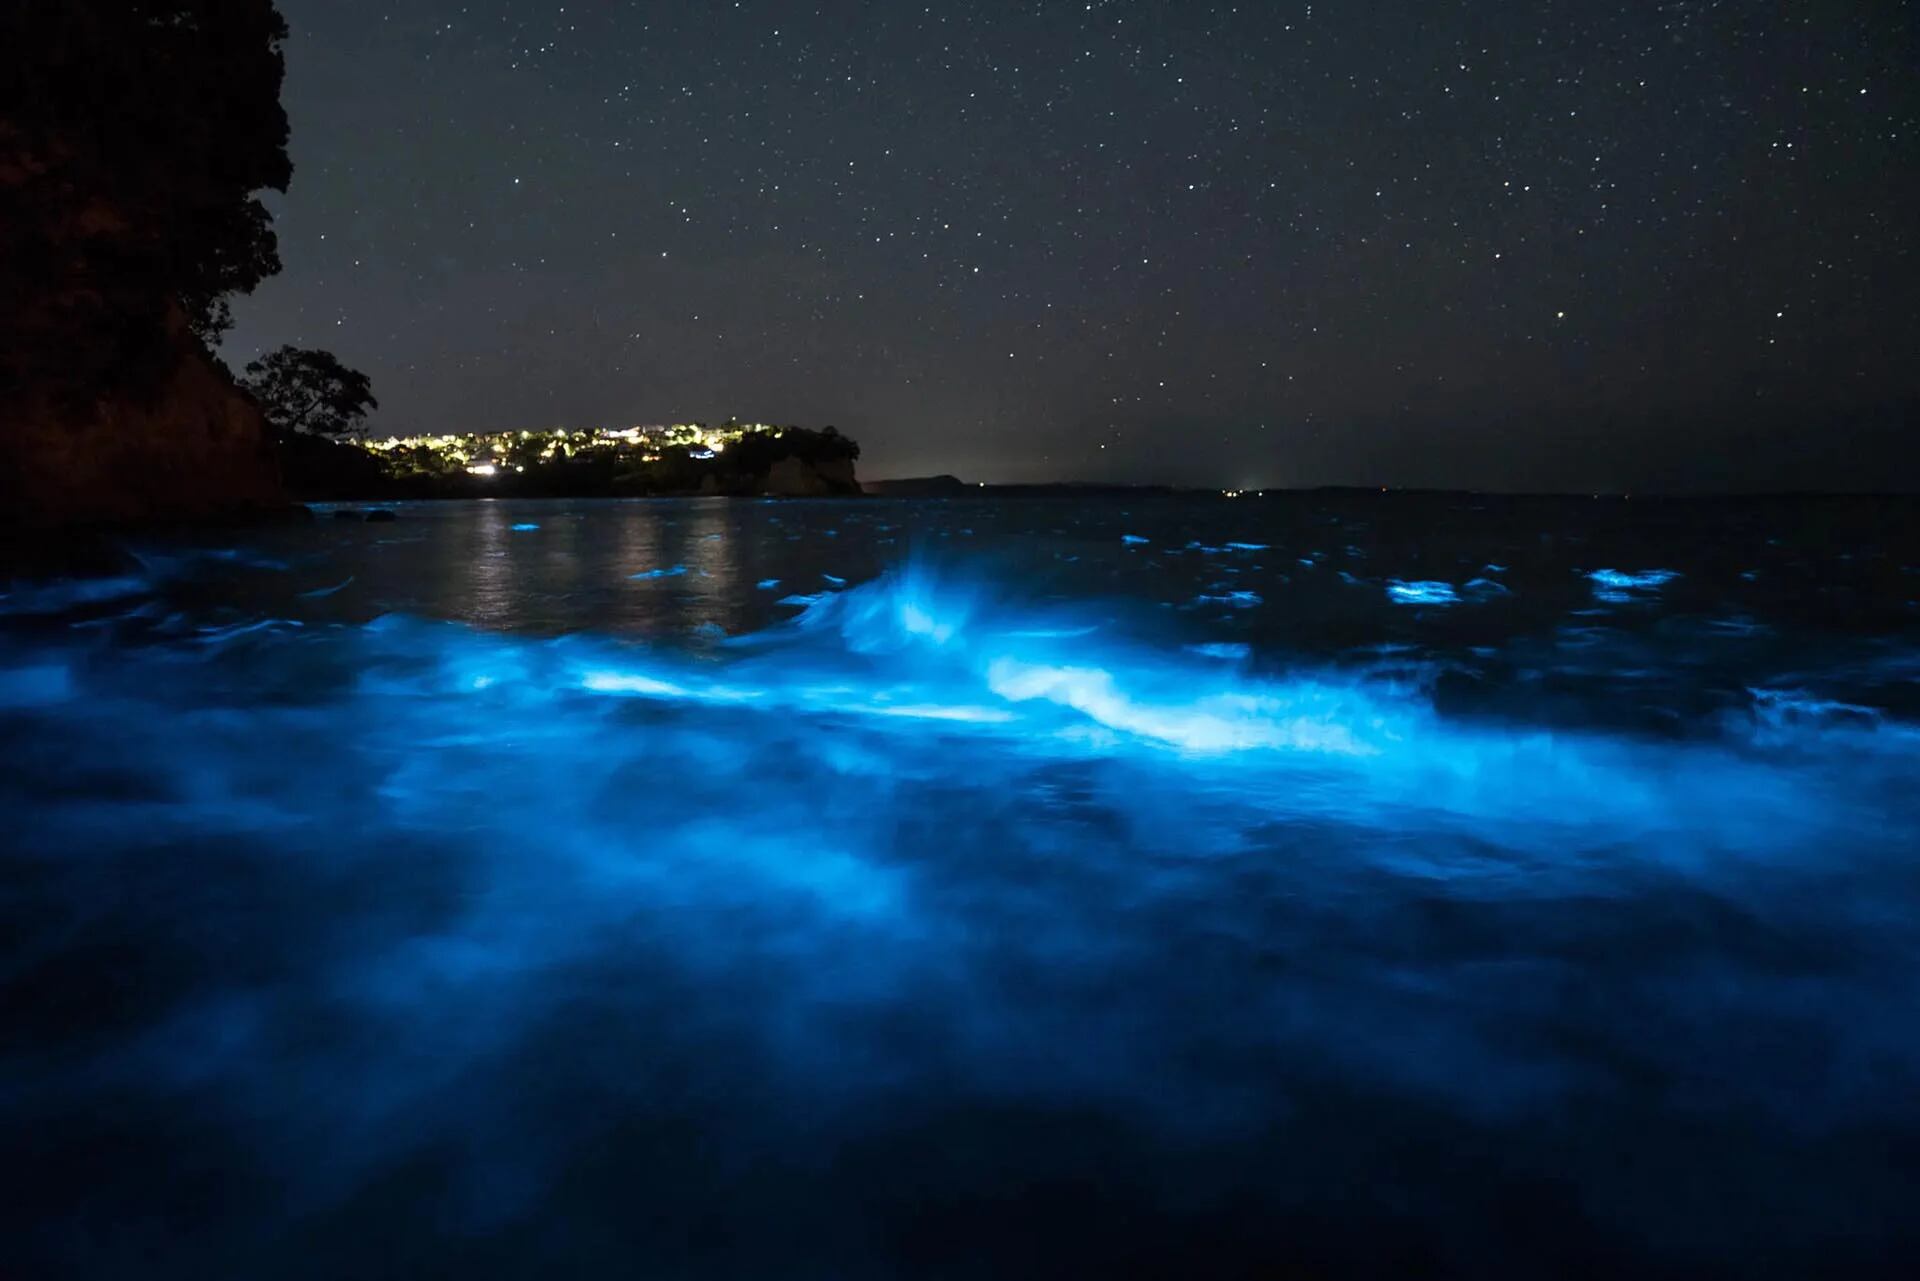 Ballenas bioluminiscentes en acción